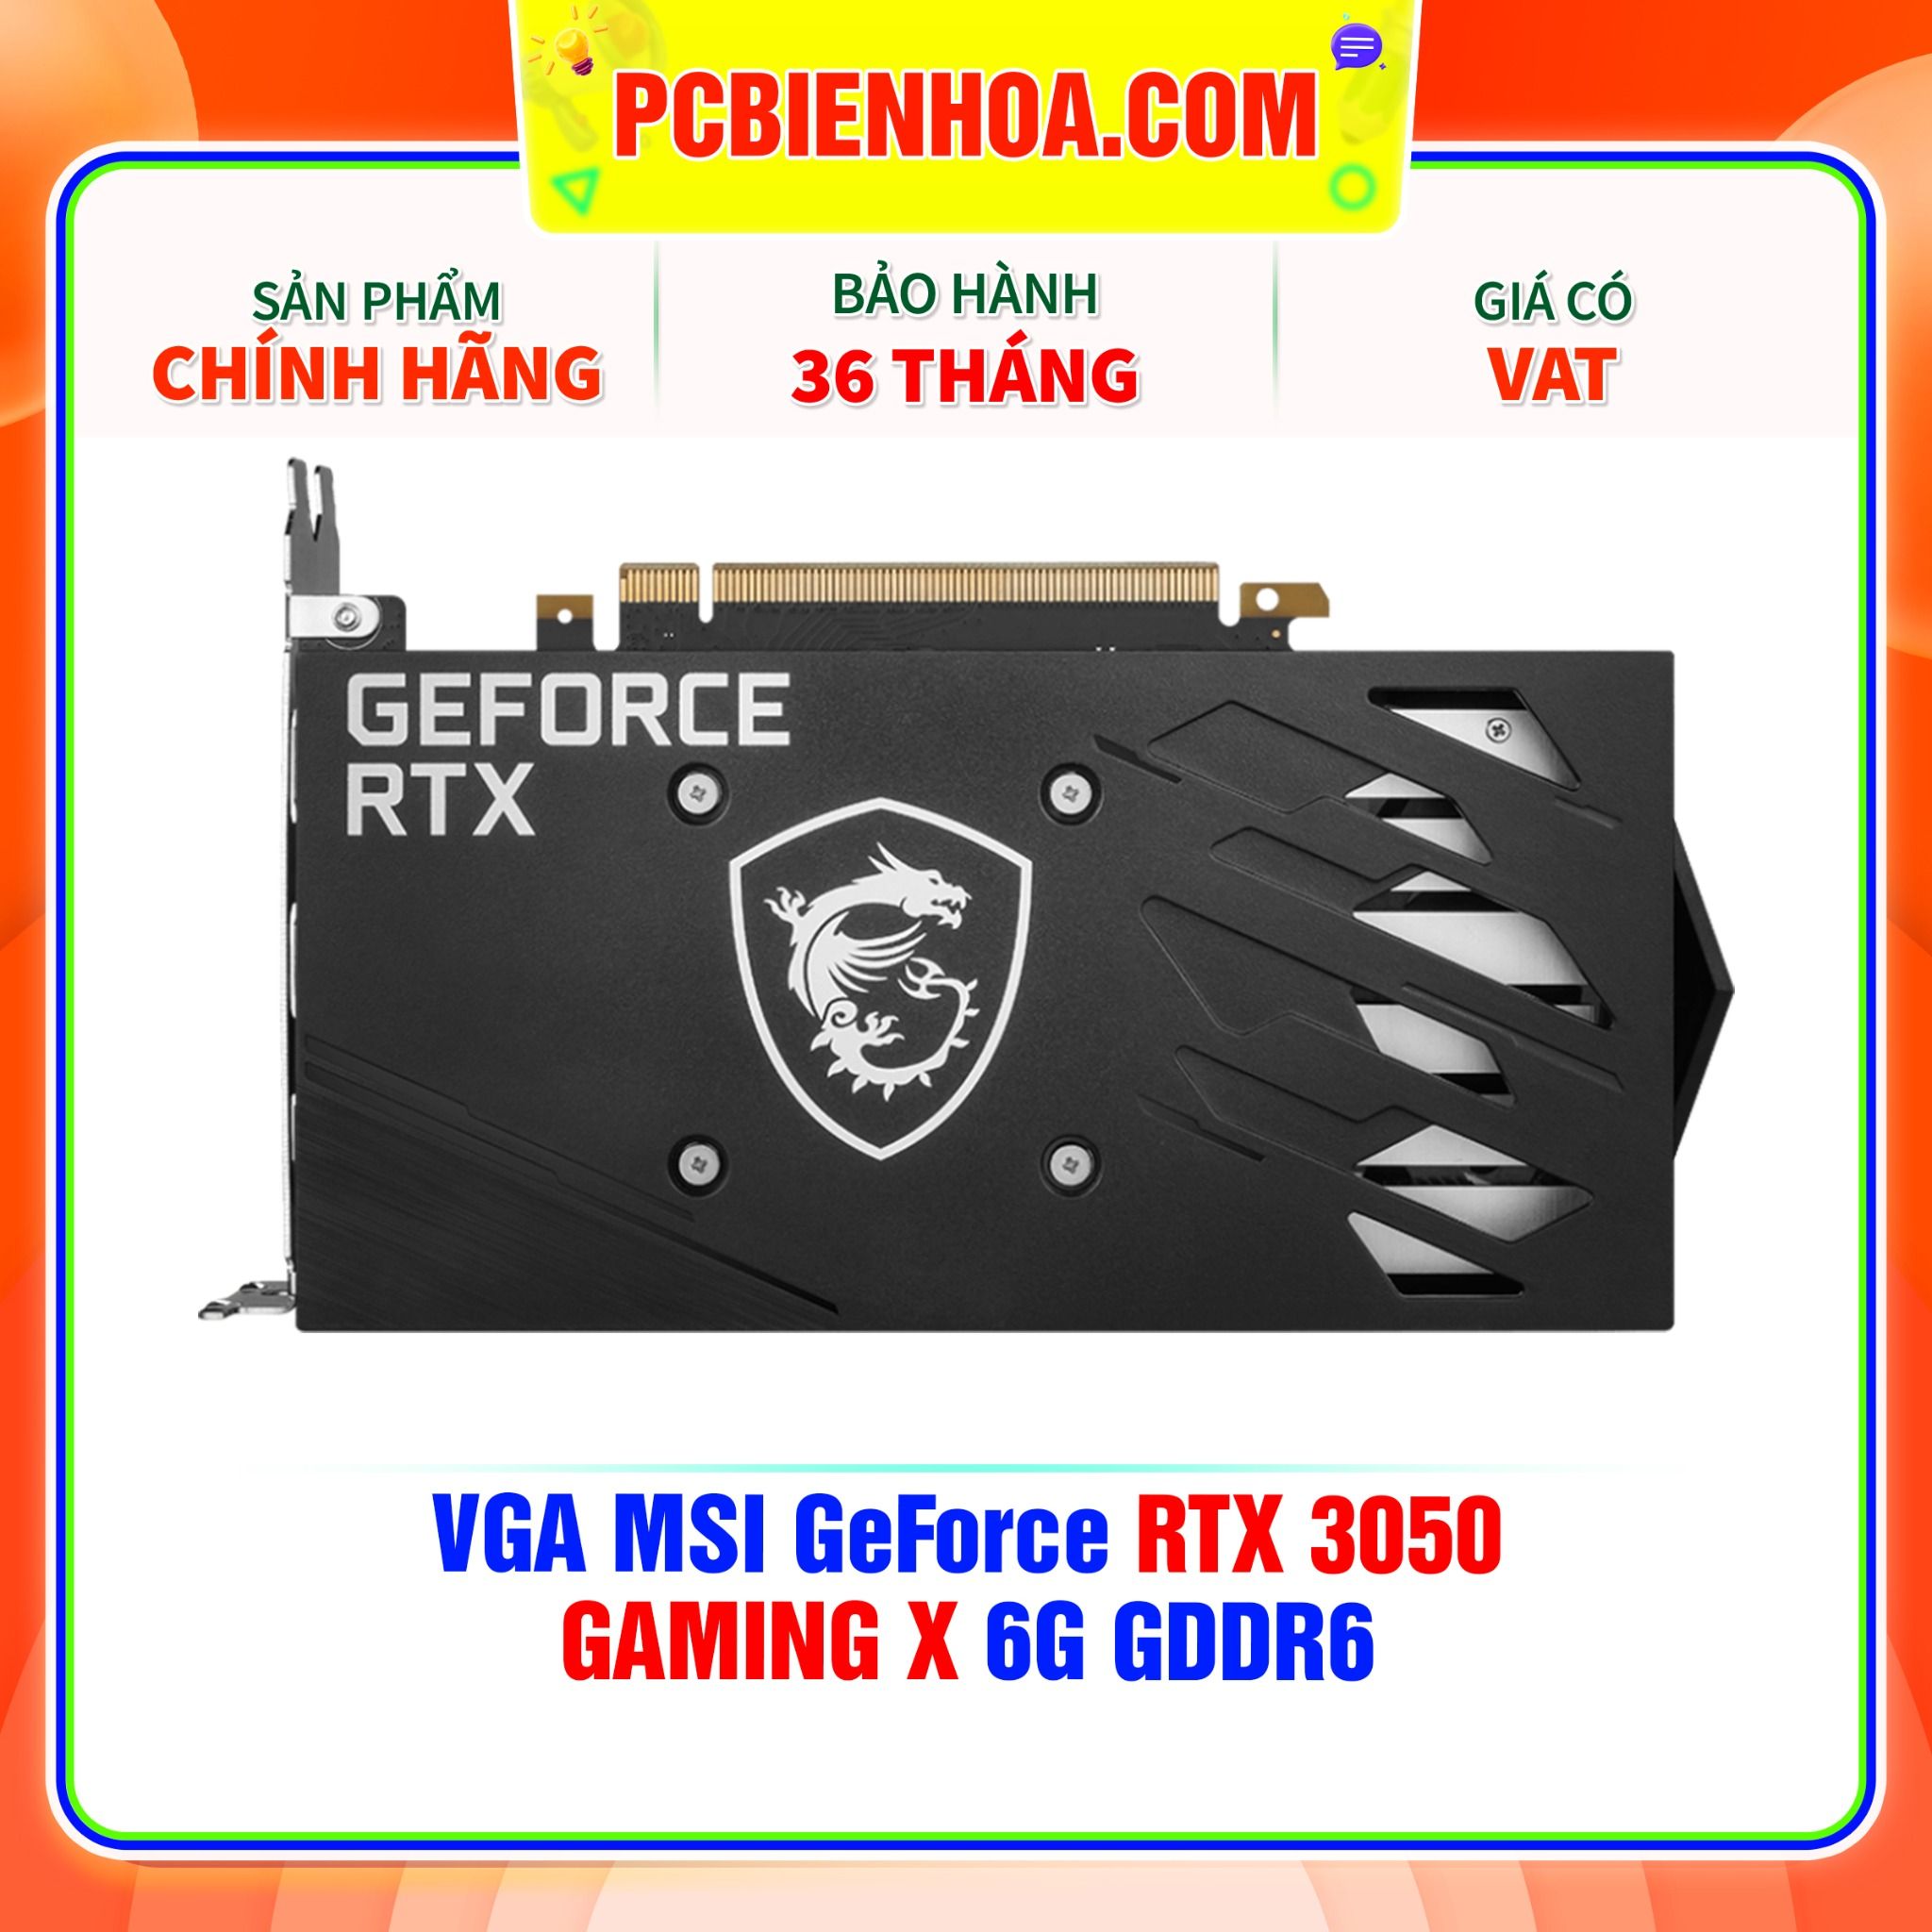  VGA MSI GeForce RTX 3050 GAMING X 6G GDDR6 